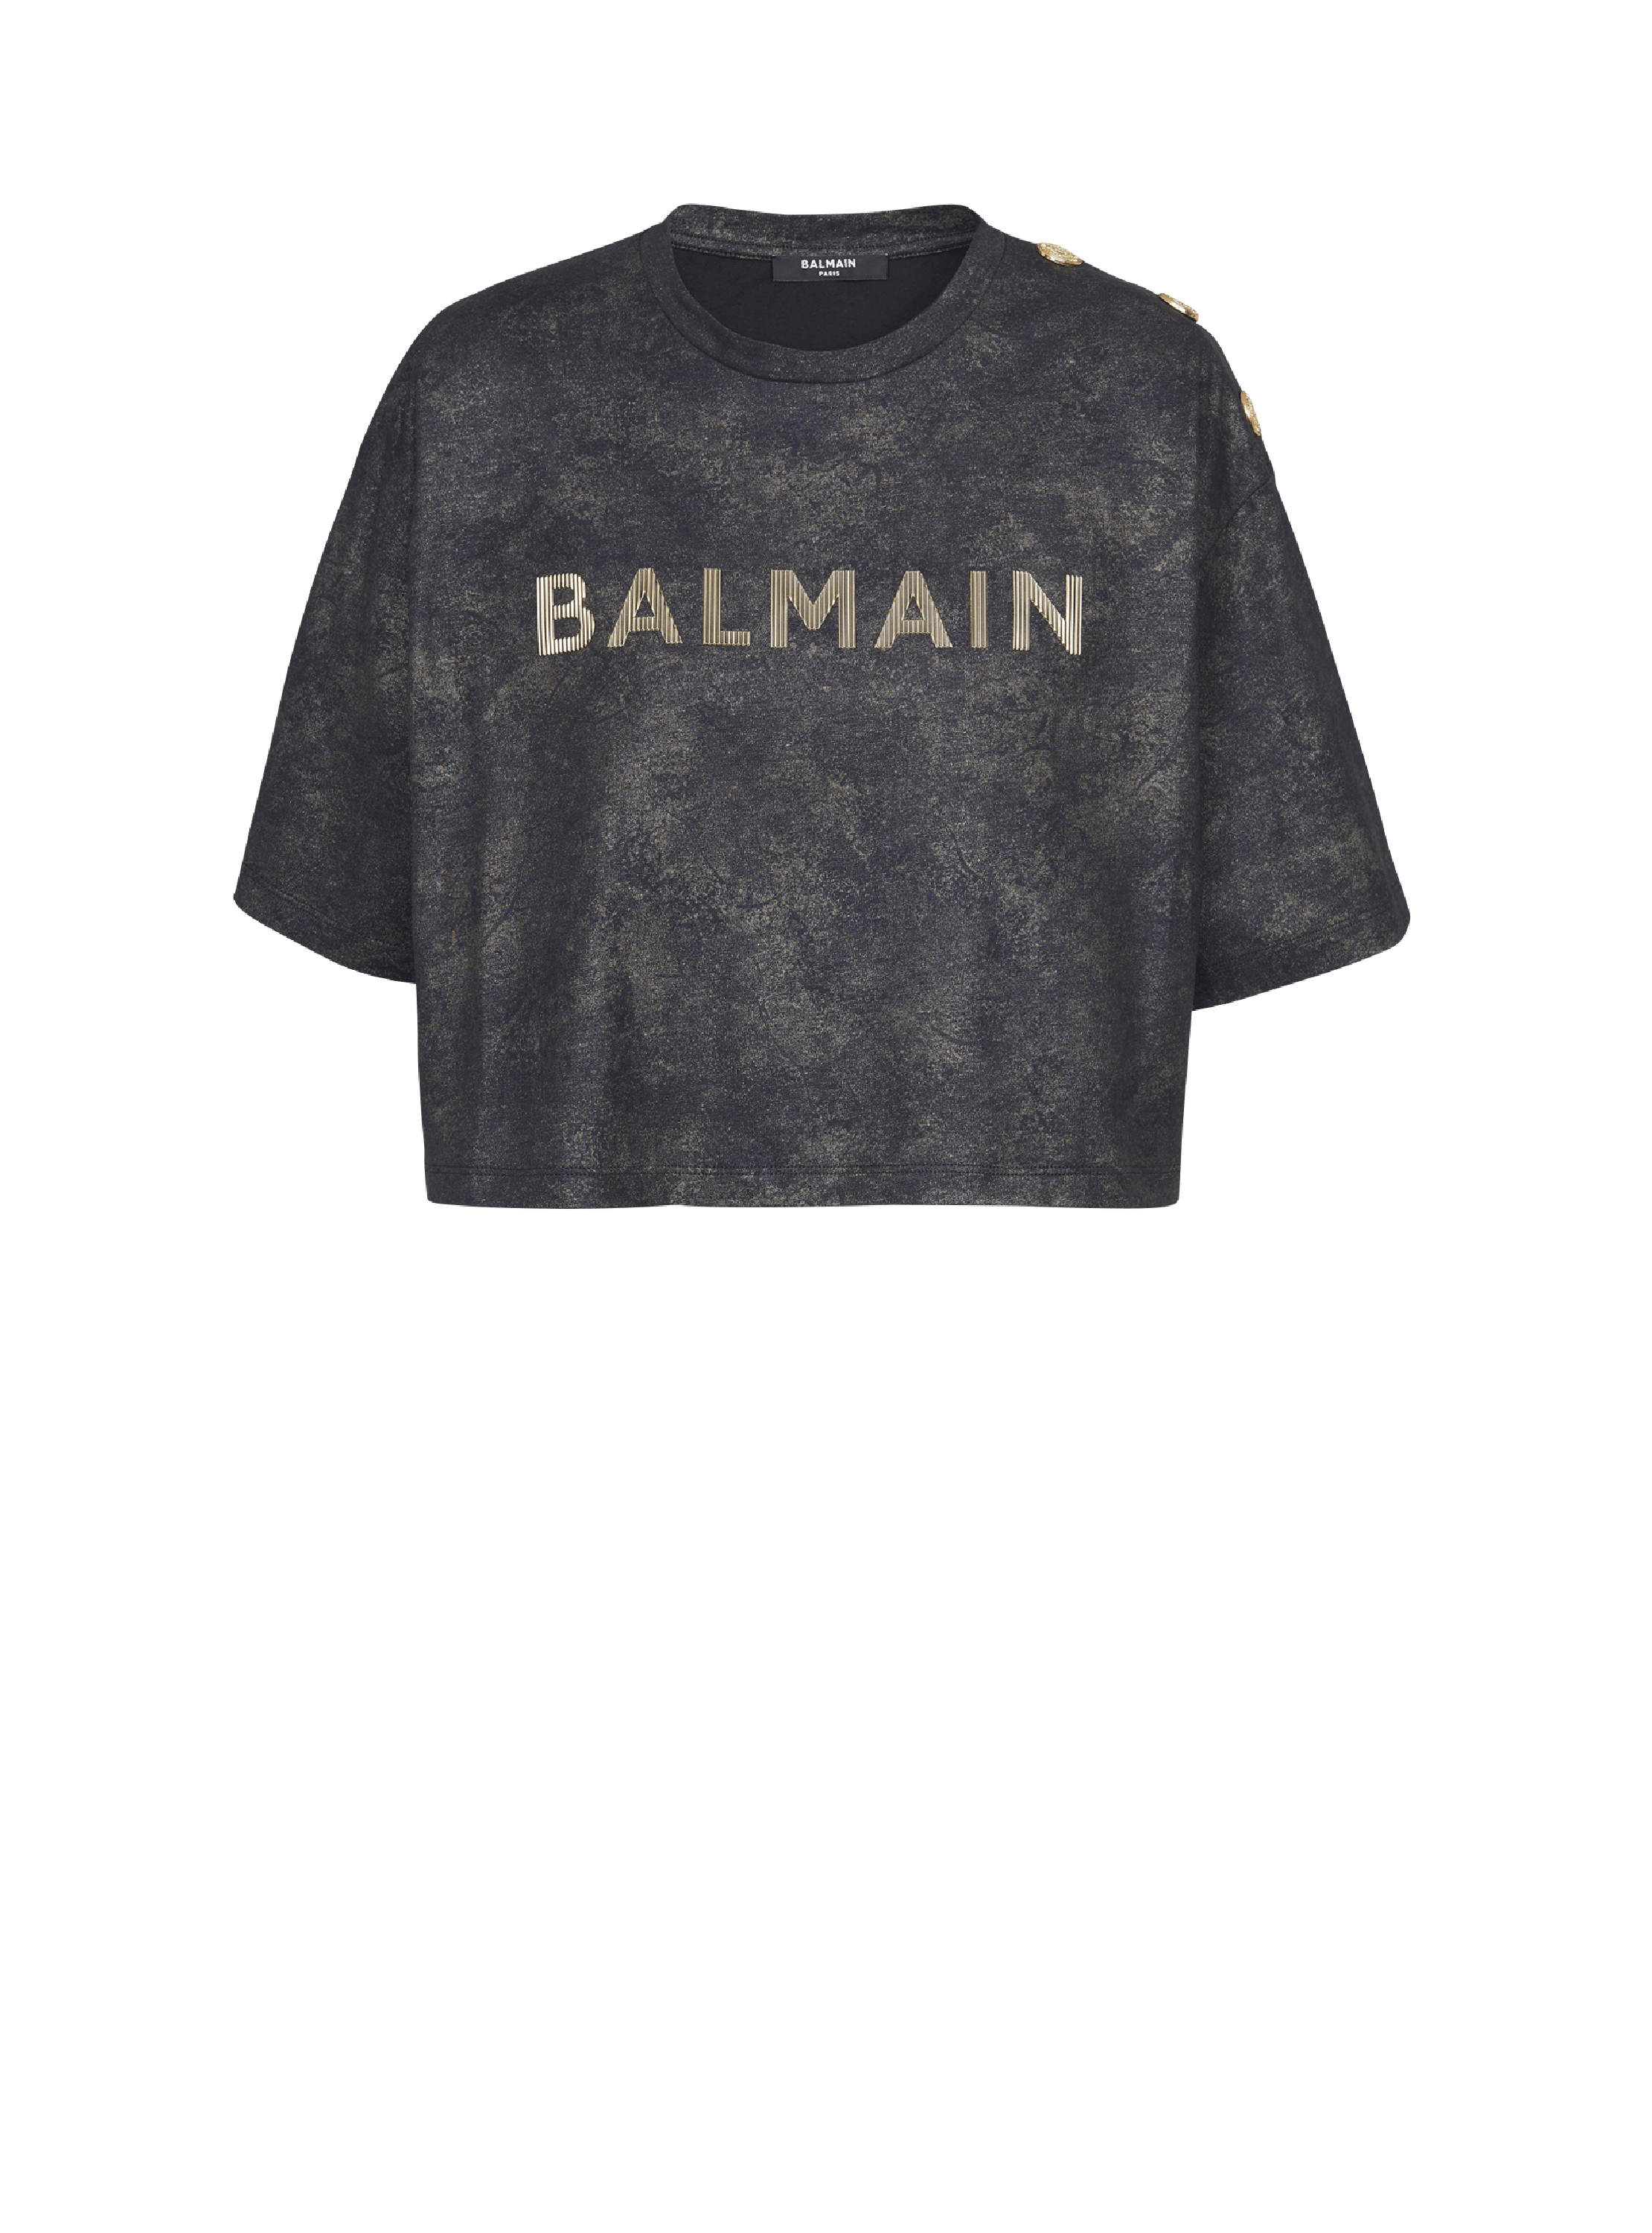 T-shirt corta in cotone ecosostenibile con logo Balmain stampato testurizzato